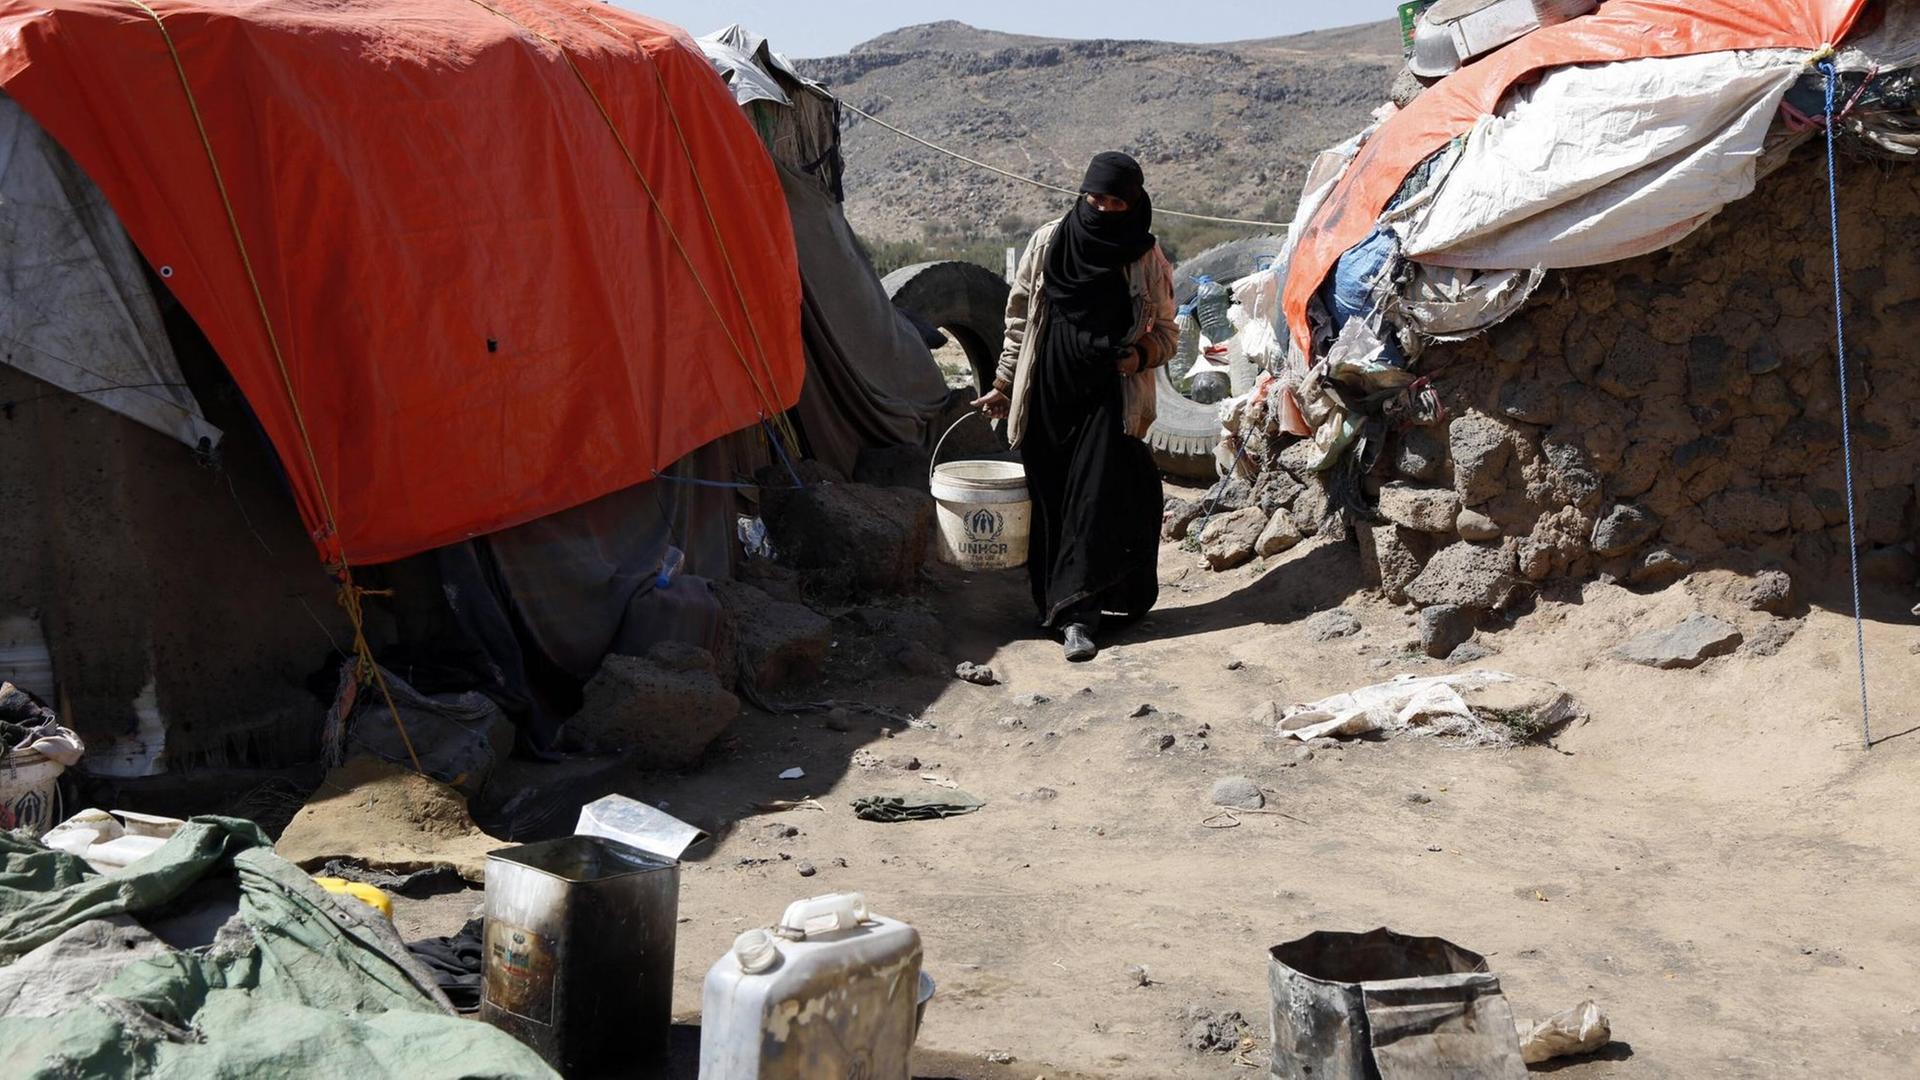 Eine Frau zwischen improvisierten Zelten in einem Flüchtlingscamp im Jemen